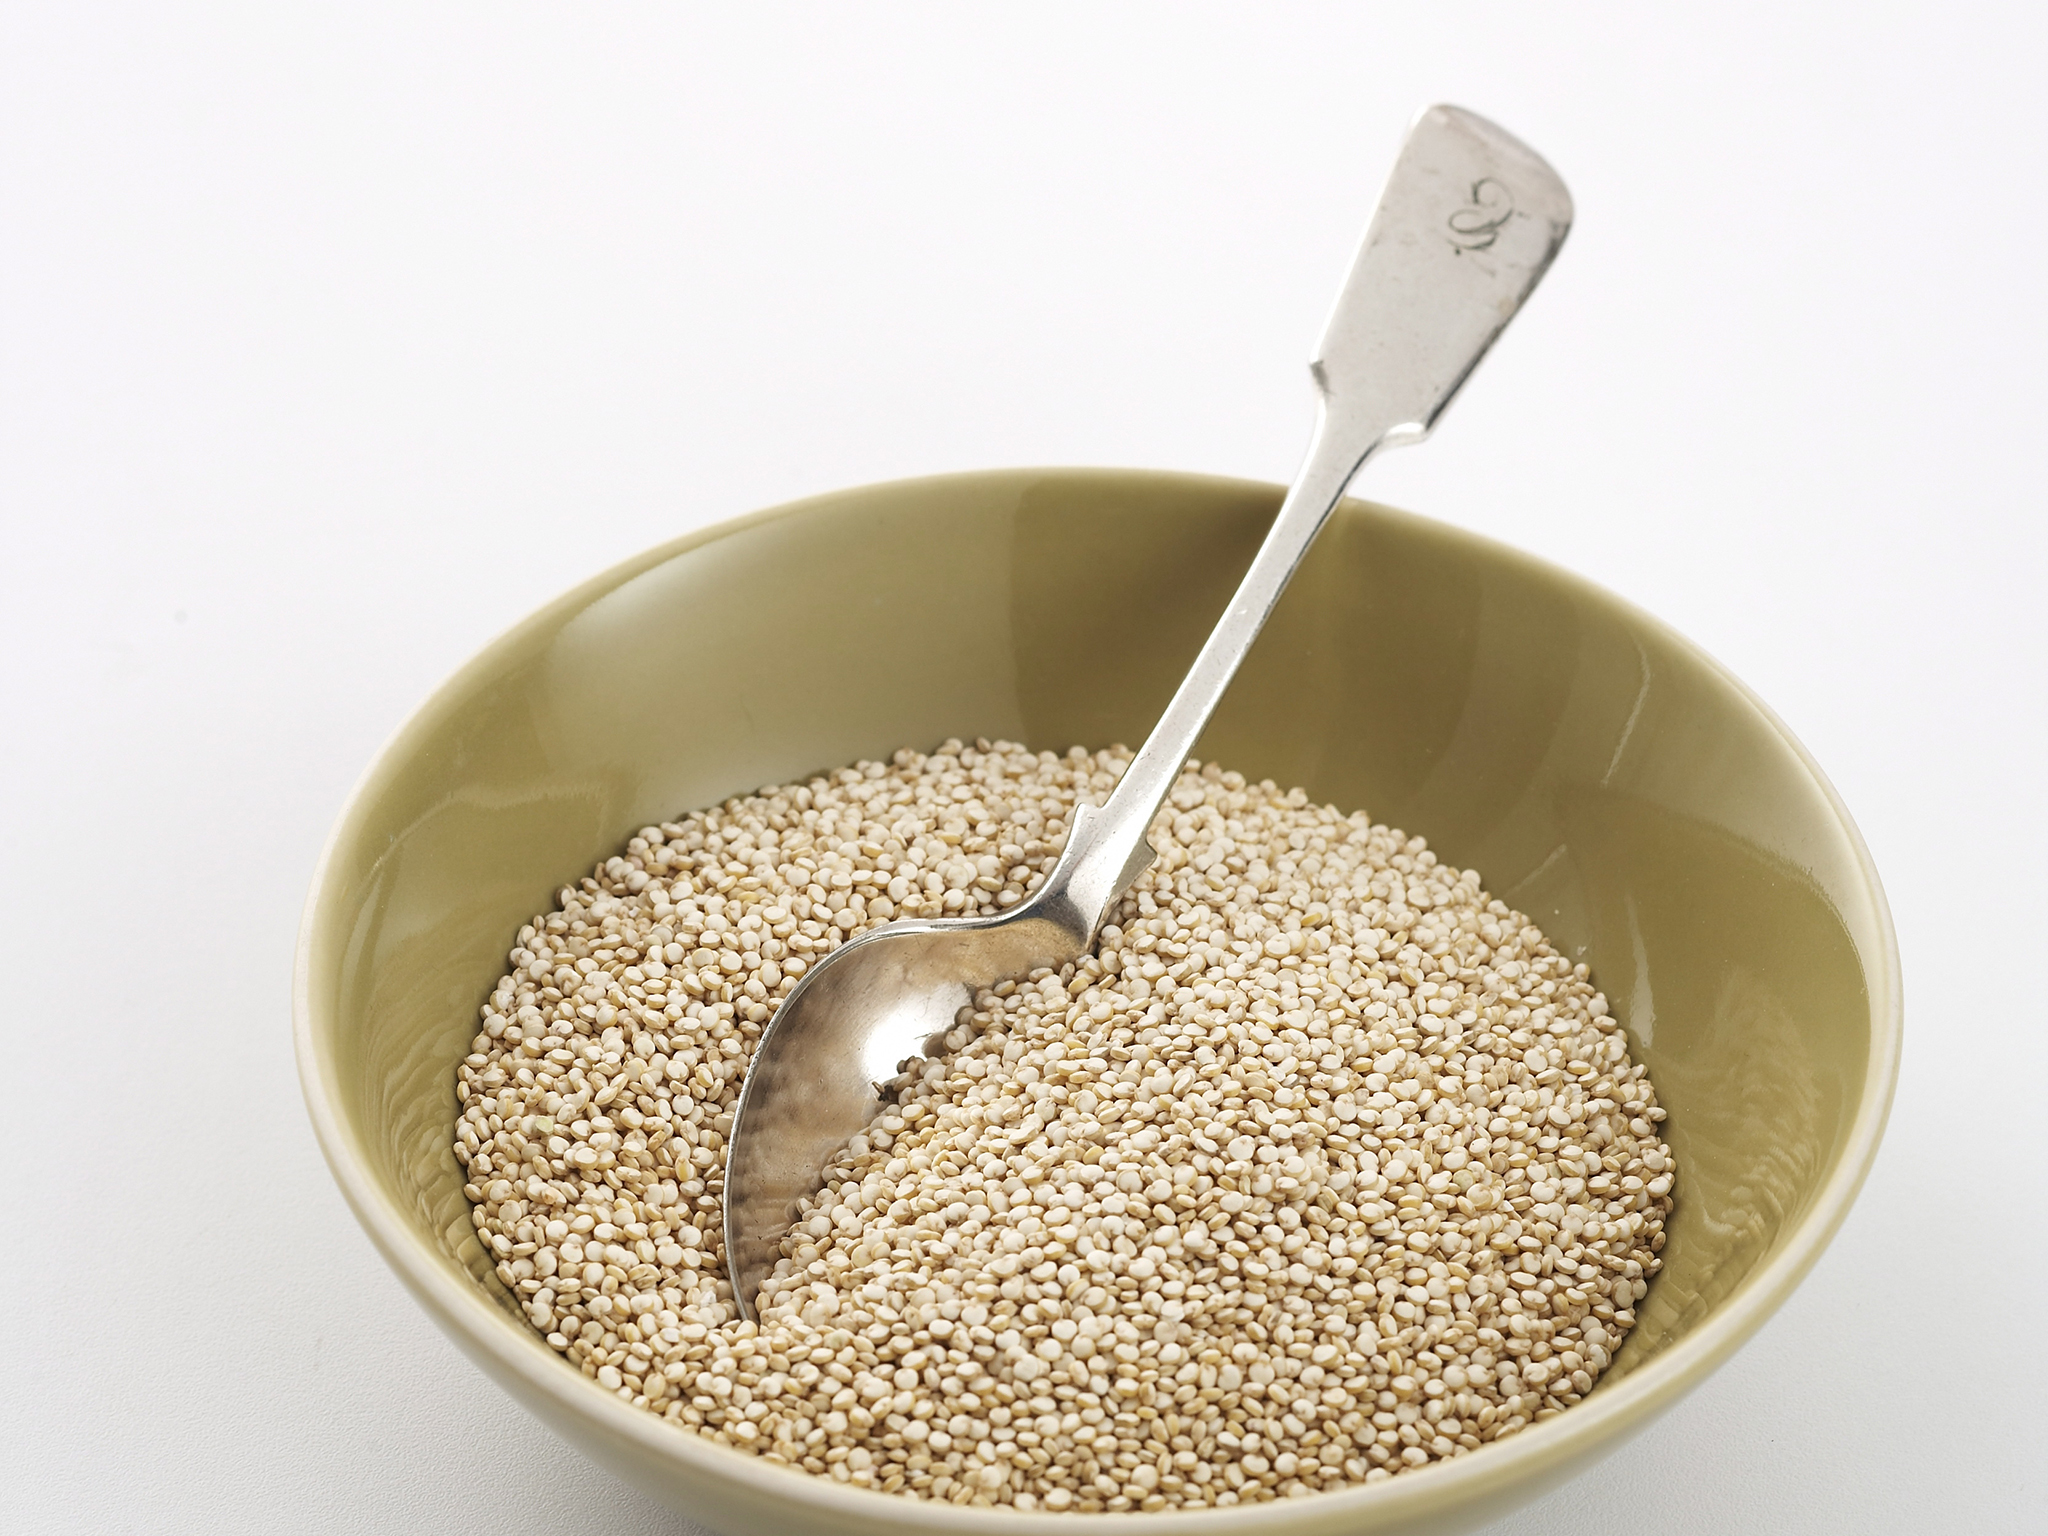 Bowl of quinoa